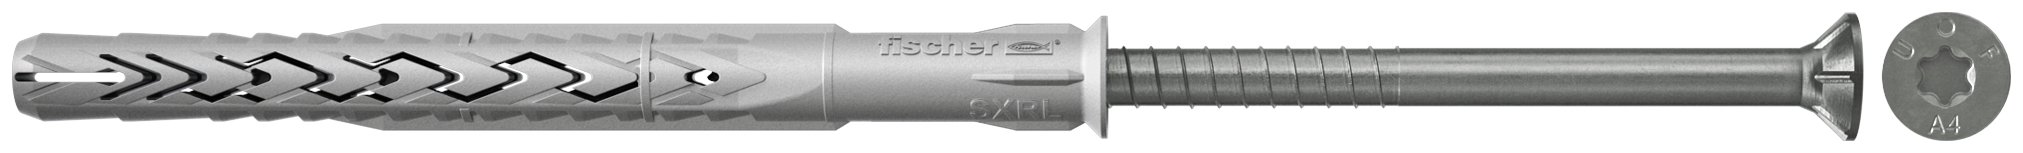 fischer Tasselli prolungati SXRL 8x160 T A4 (1 Pz.) Tassello prolungato in nylon con marcatura CE con vite premontata in acciaio inox A4, T.S.P. impronta torx.